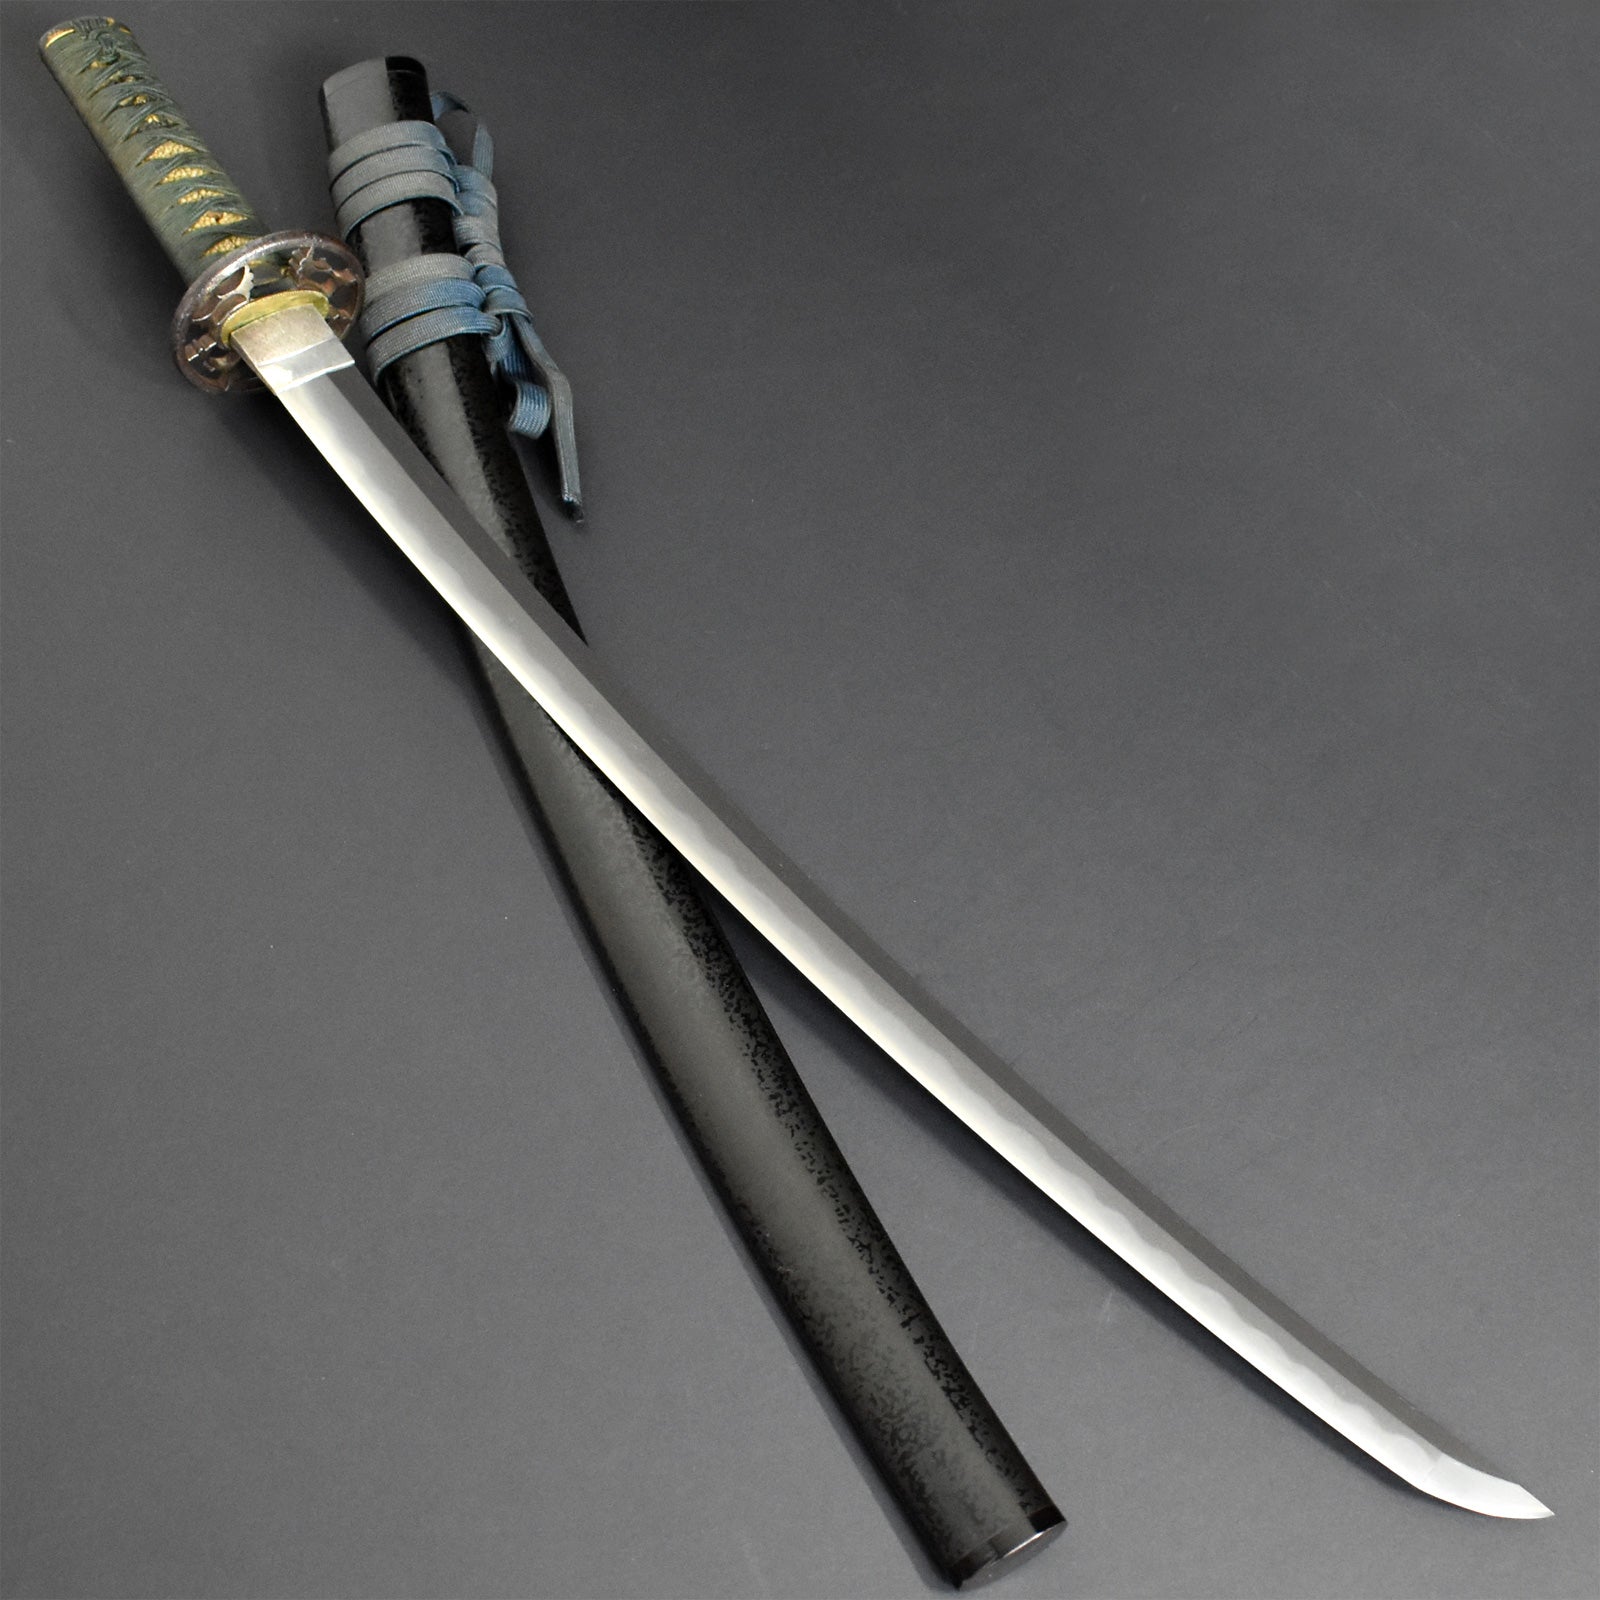 authentic masamune sword